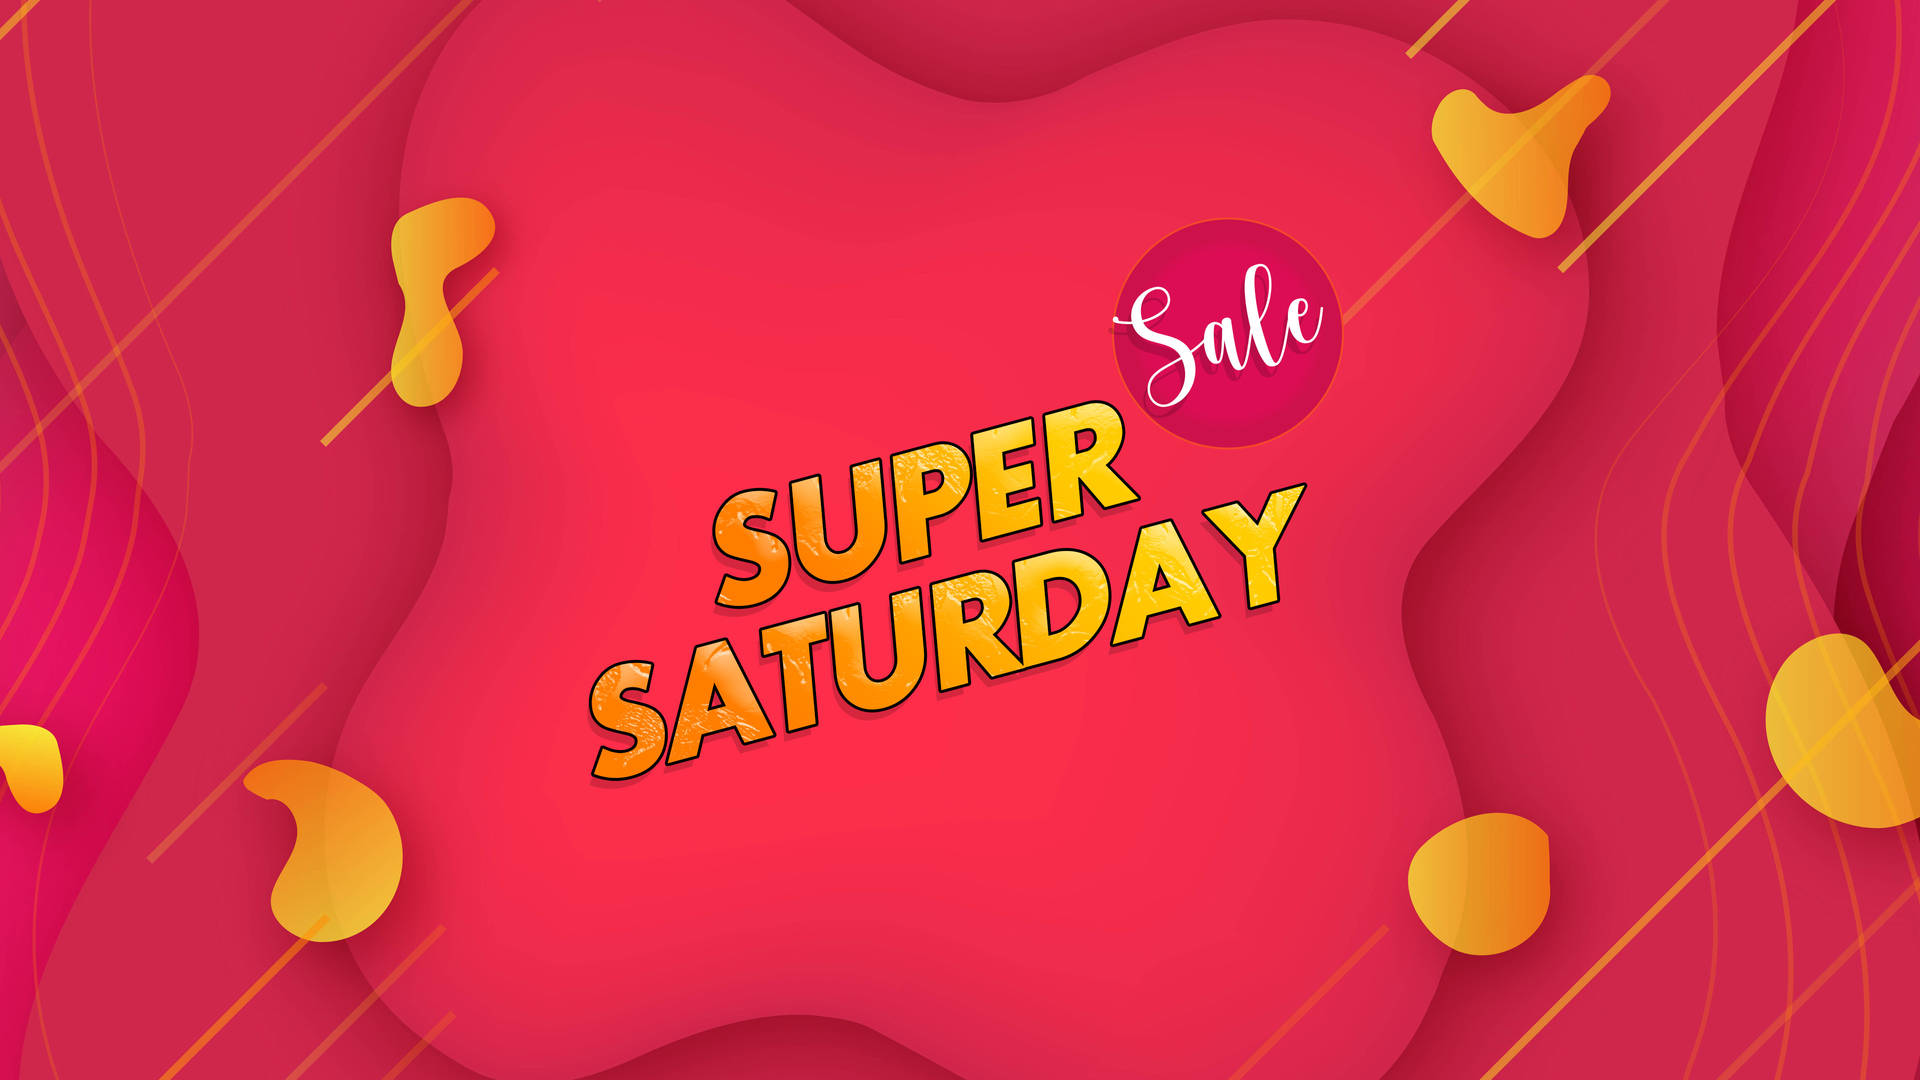 Super Saturday Sales Extravaganza! Background